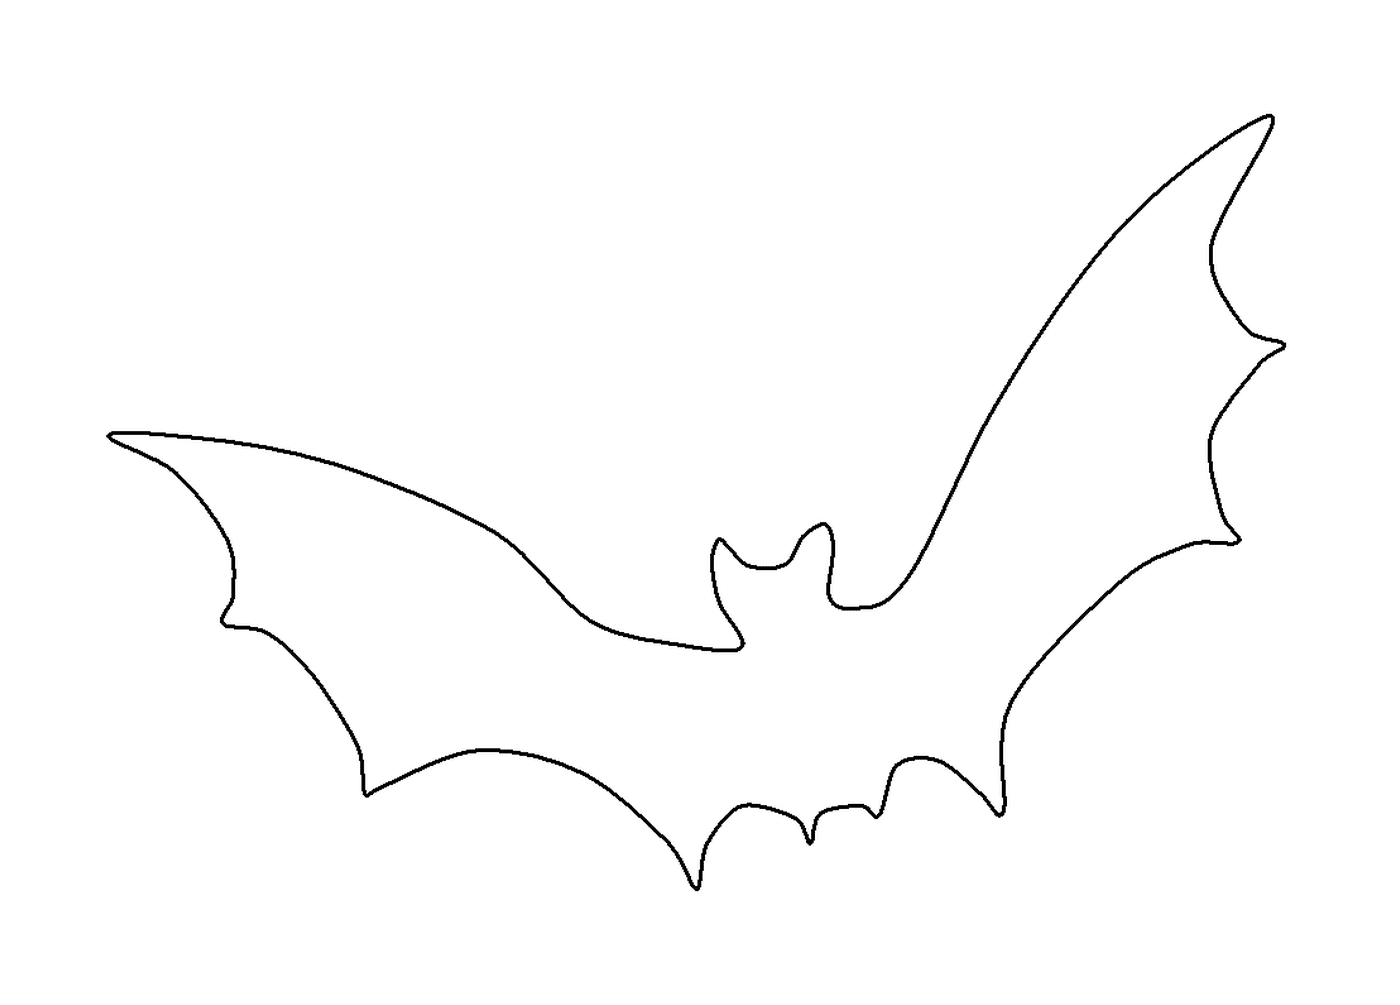  飞行蝙蝠的轮廓 